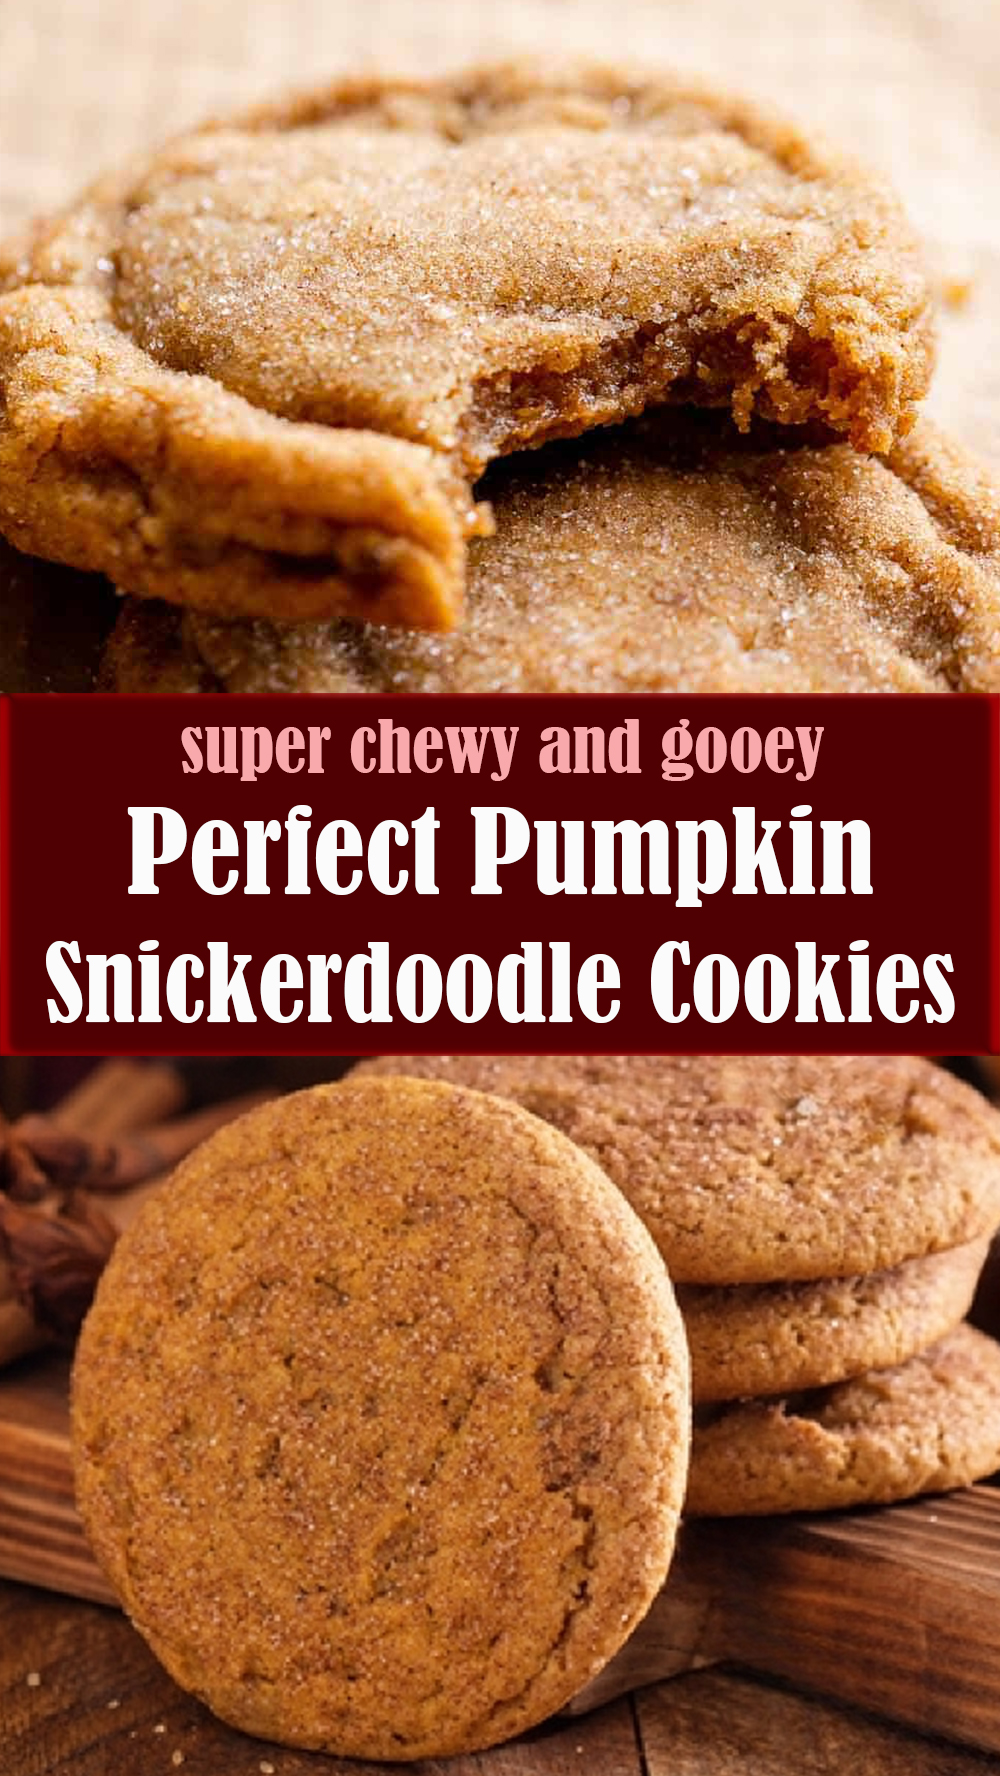 Perfect Pumpkin Snickerdoodle Cookies